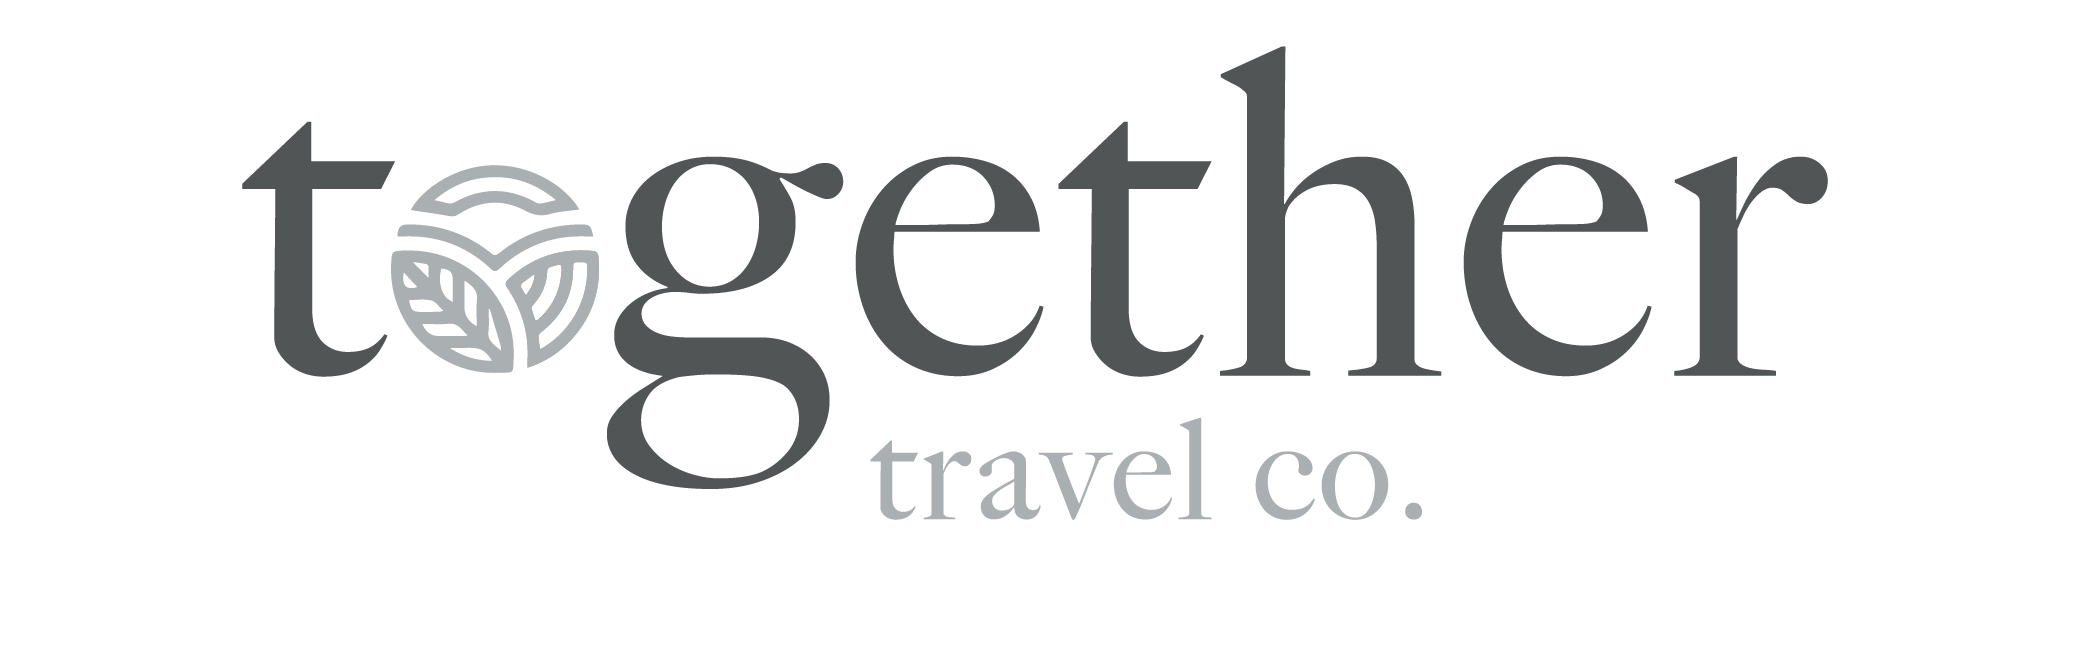 Together Travel co. logo